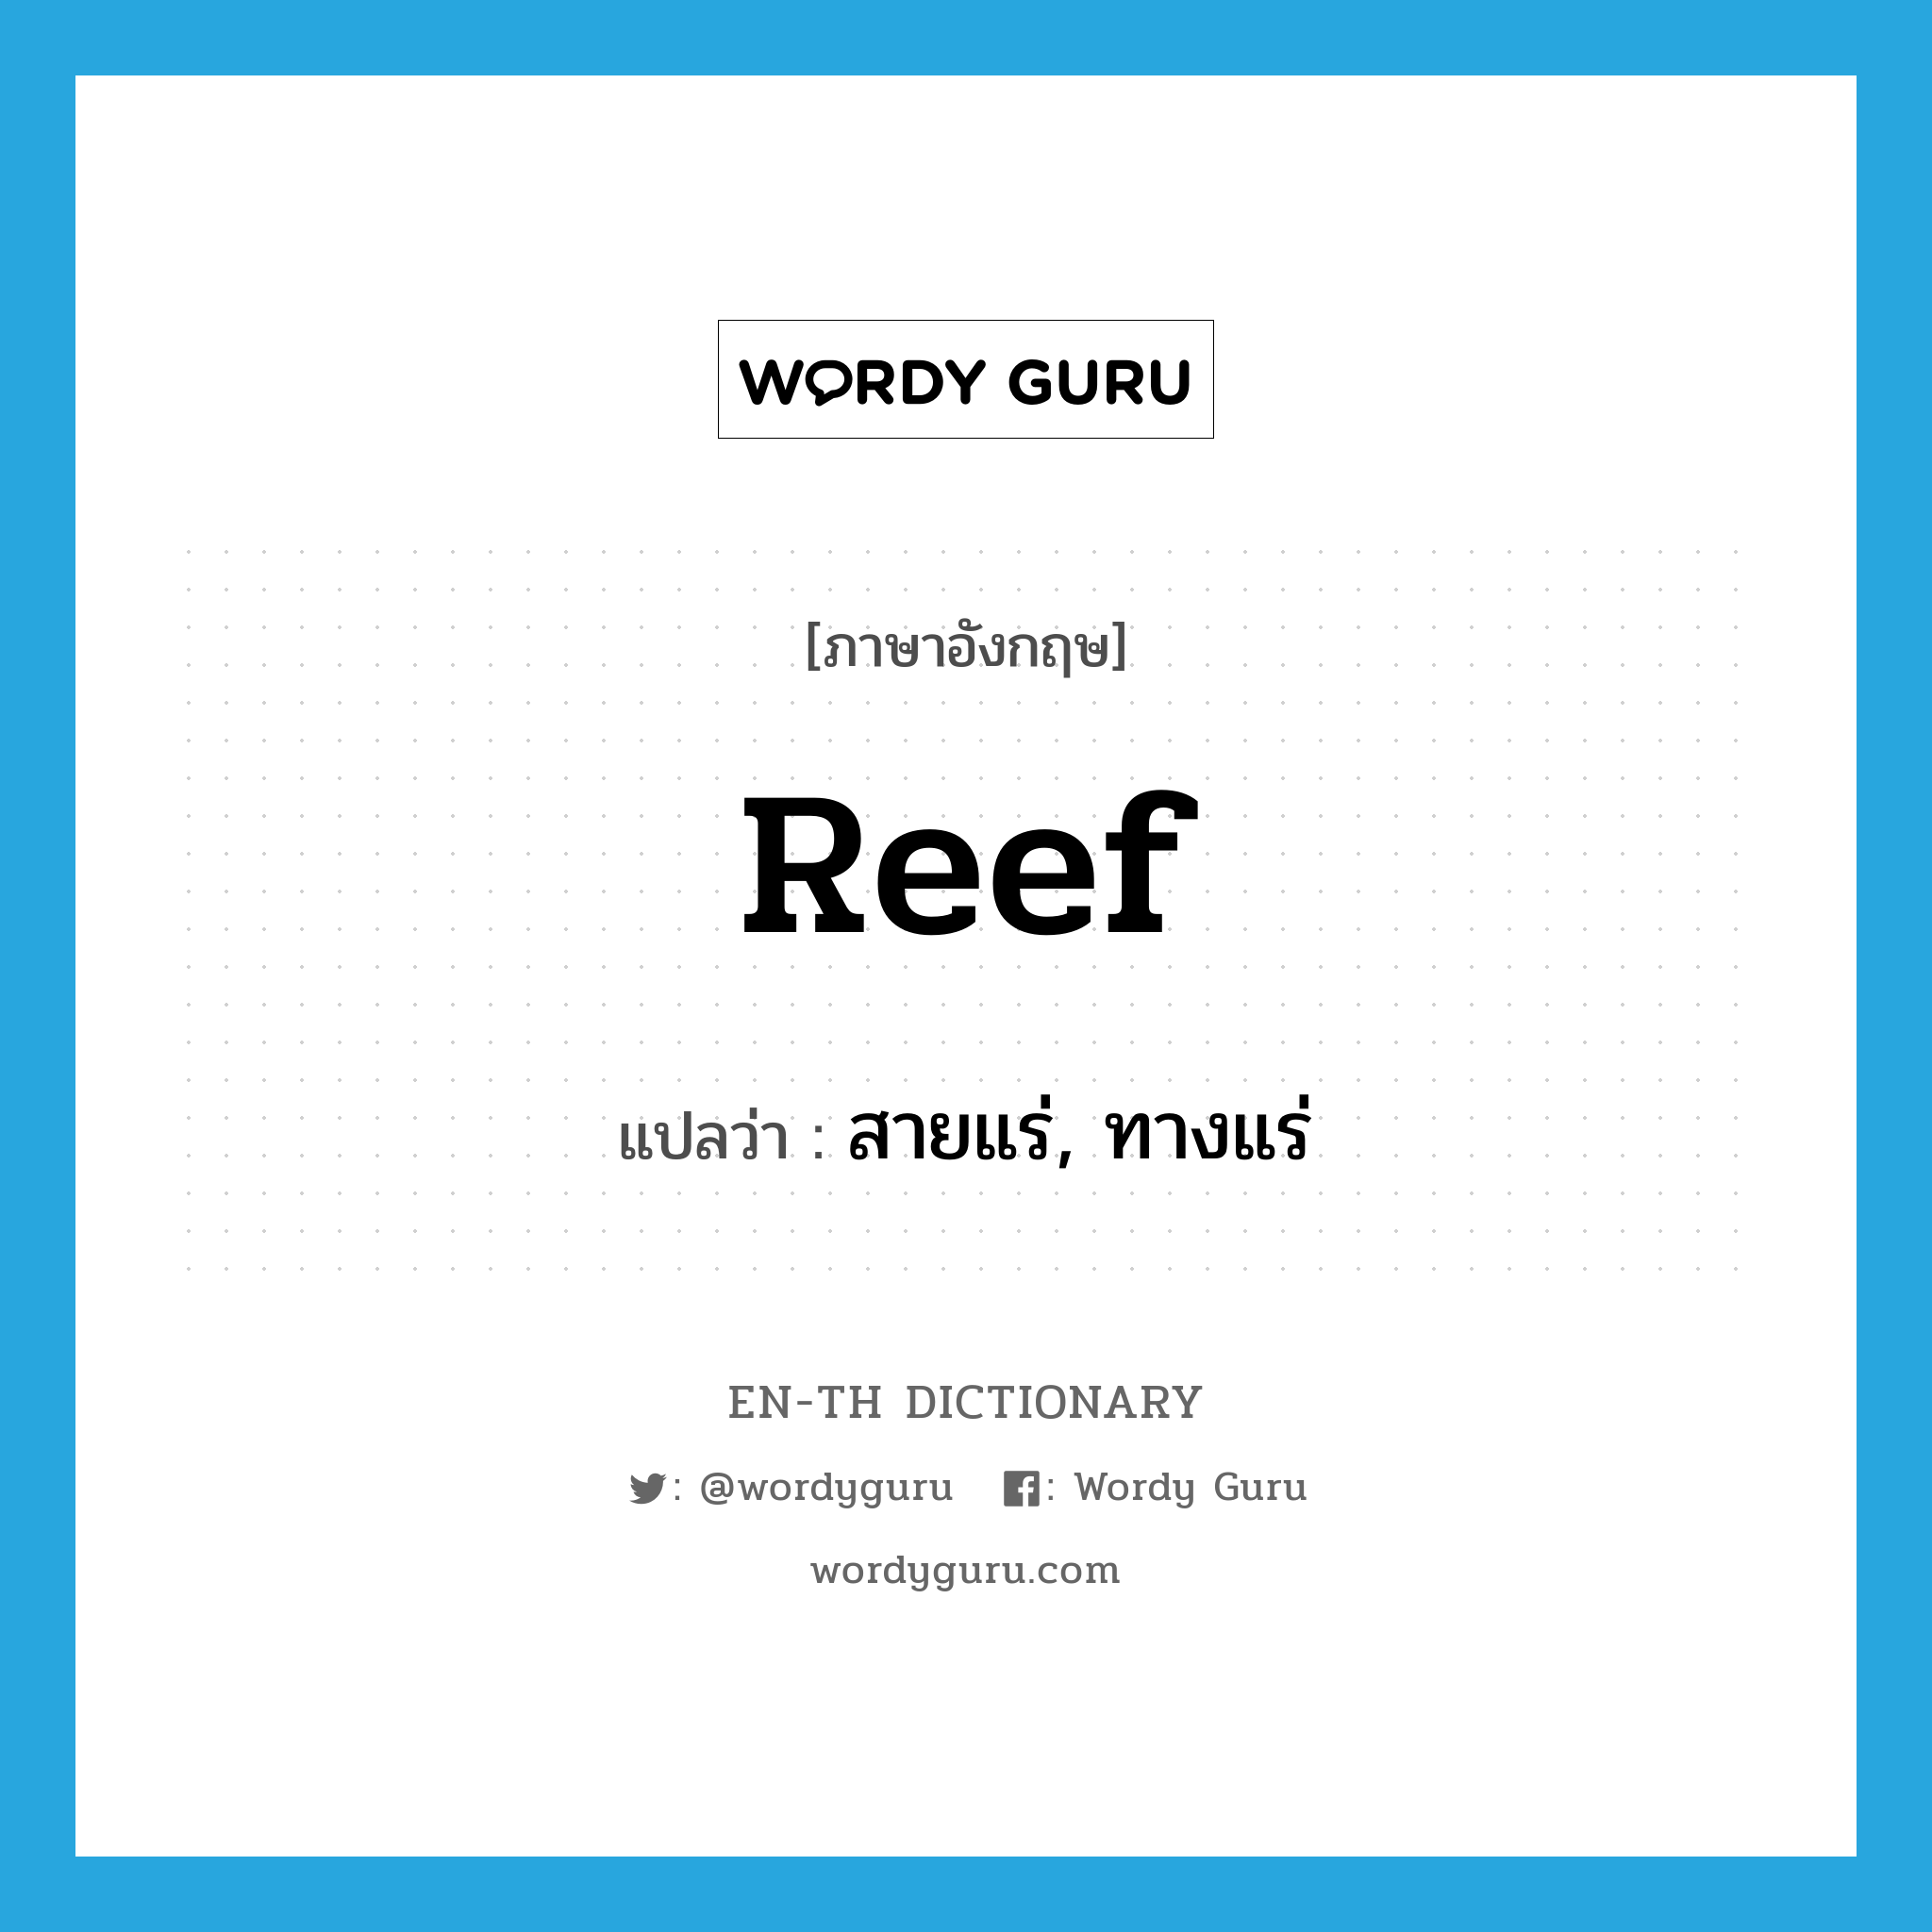 reef แปลว่า?, คำศัพท์ภาษาอังกฤษ reef แปลว่า สายแร่, ทางแร่ ประเภท N หมวด N